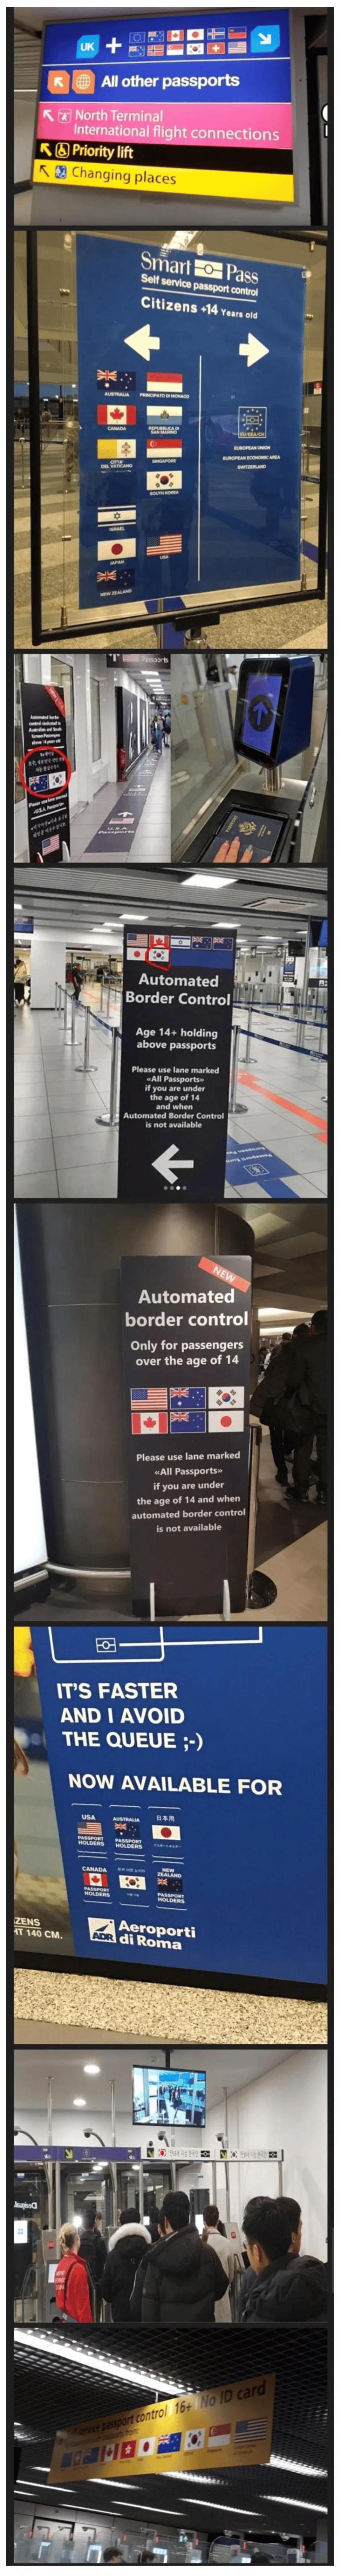 중국인들이 공항에서 느낀다는 열등감